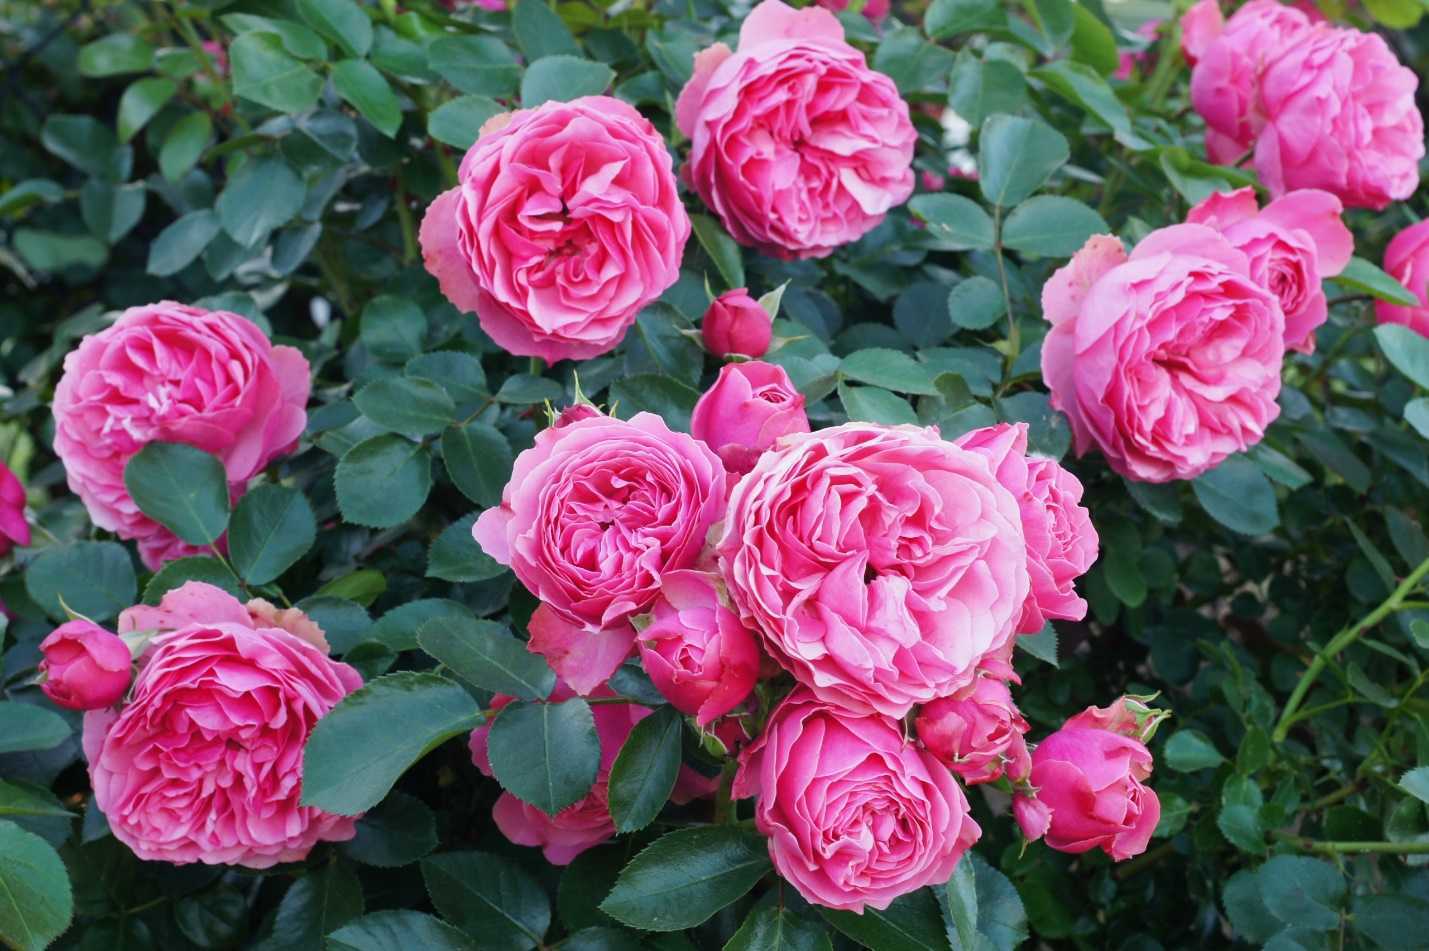 Роза Леонардо да Винчи – один из самых эффектных сортов группы флорибунда с цветами однотонной окраски Используется в качестве срезочного сорта и для